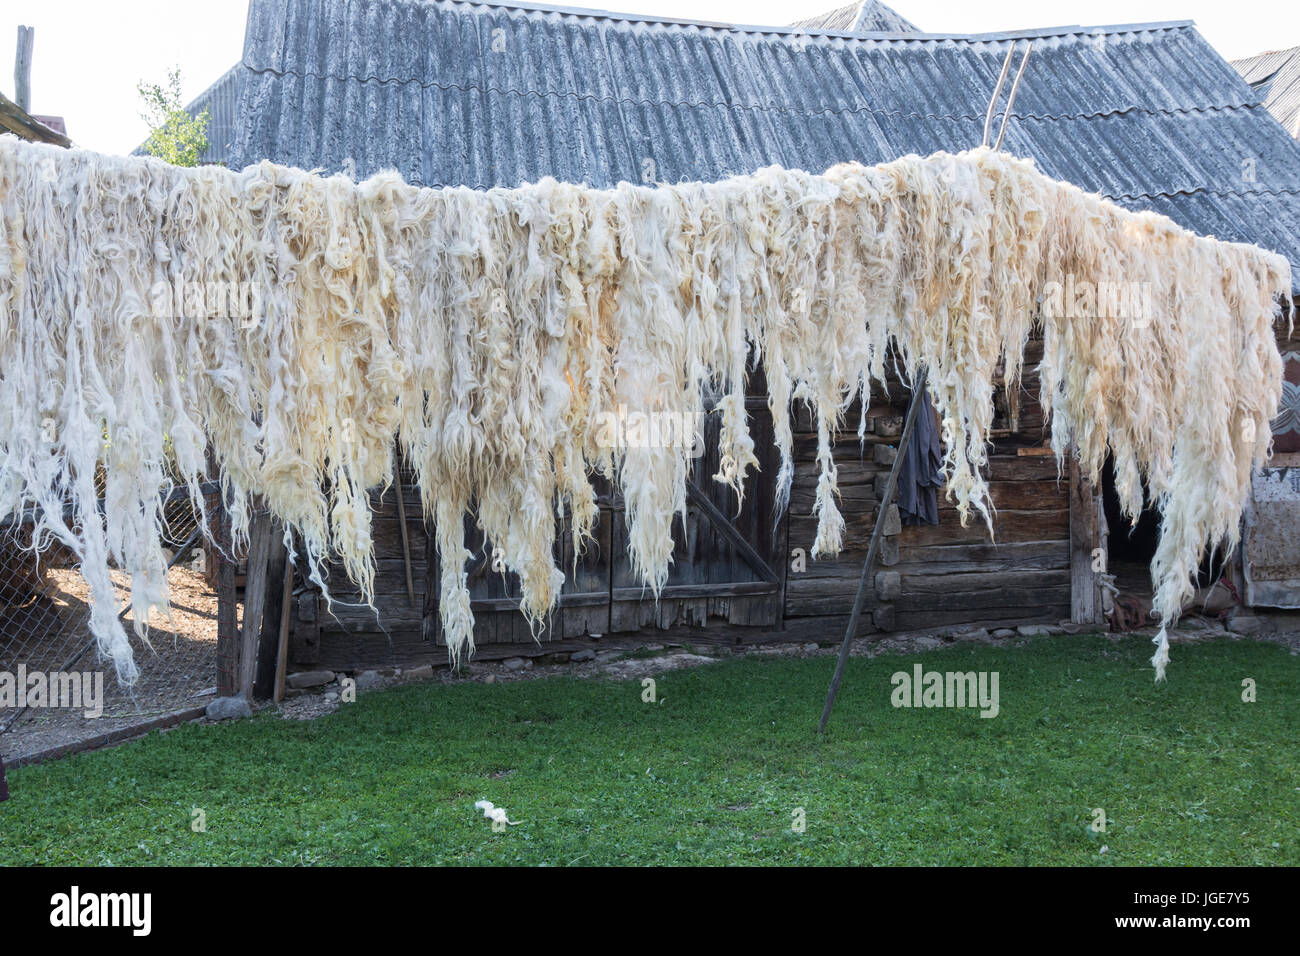 Schafwolle zum Trocknen an der frischen Luft in der Region Maramures, Rumänien Stockfoto